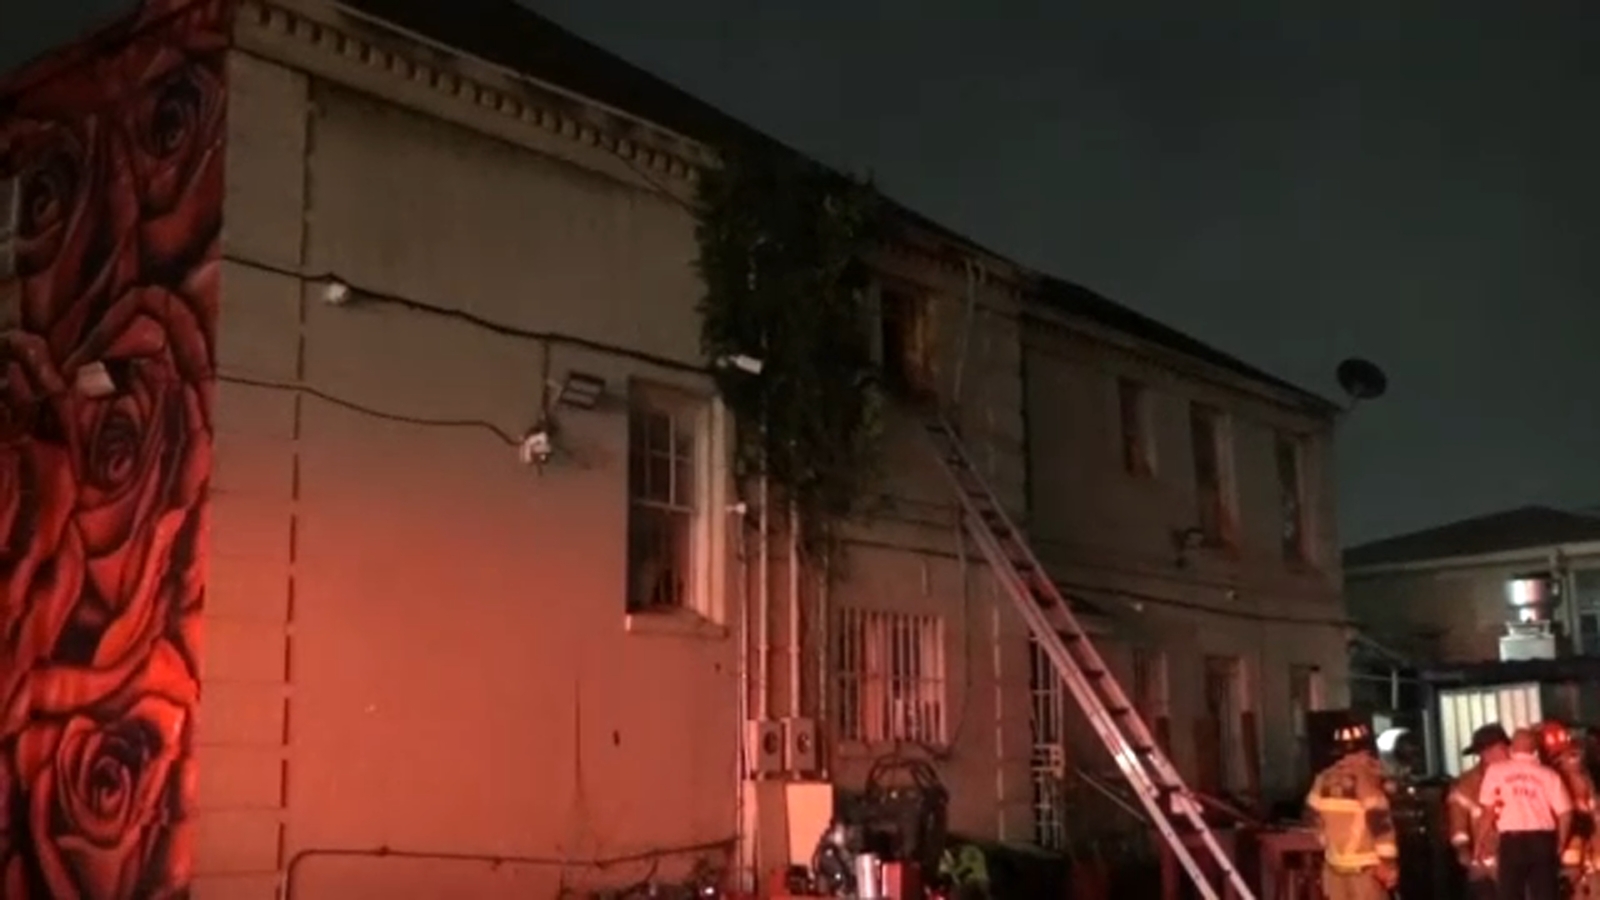 Restaurant fire: Houston Fire Department responds to fire in historic Third Ward at beloved Turkey Leg Hut [Video]